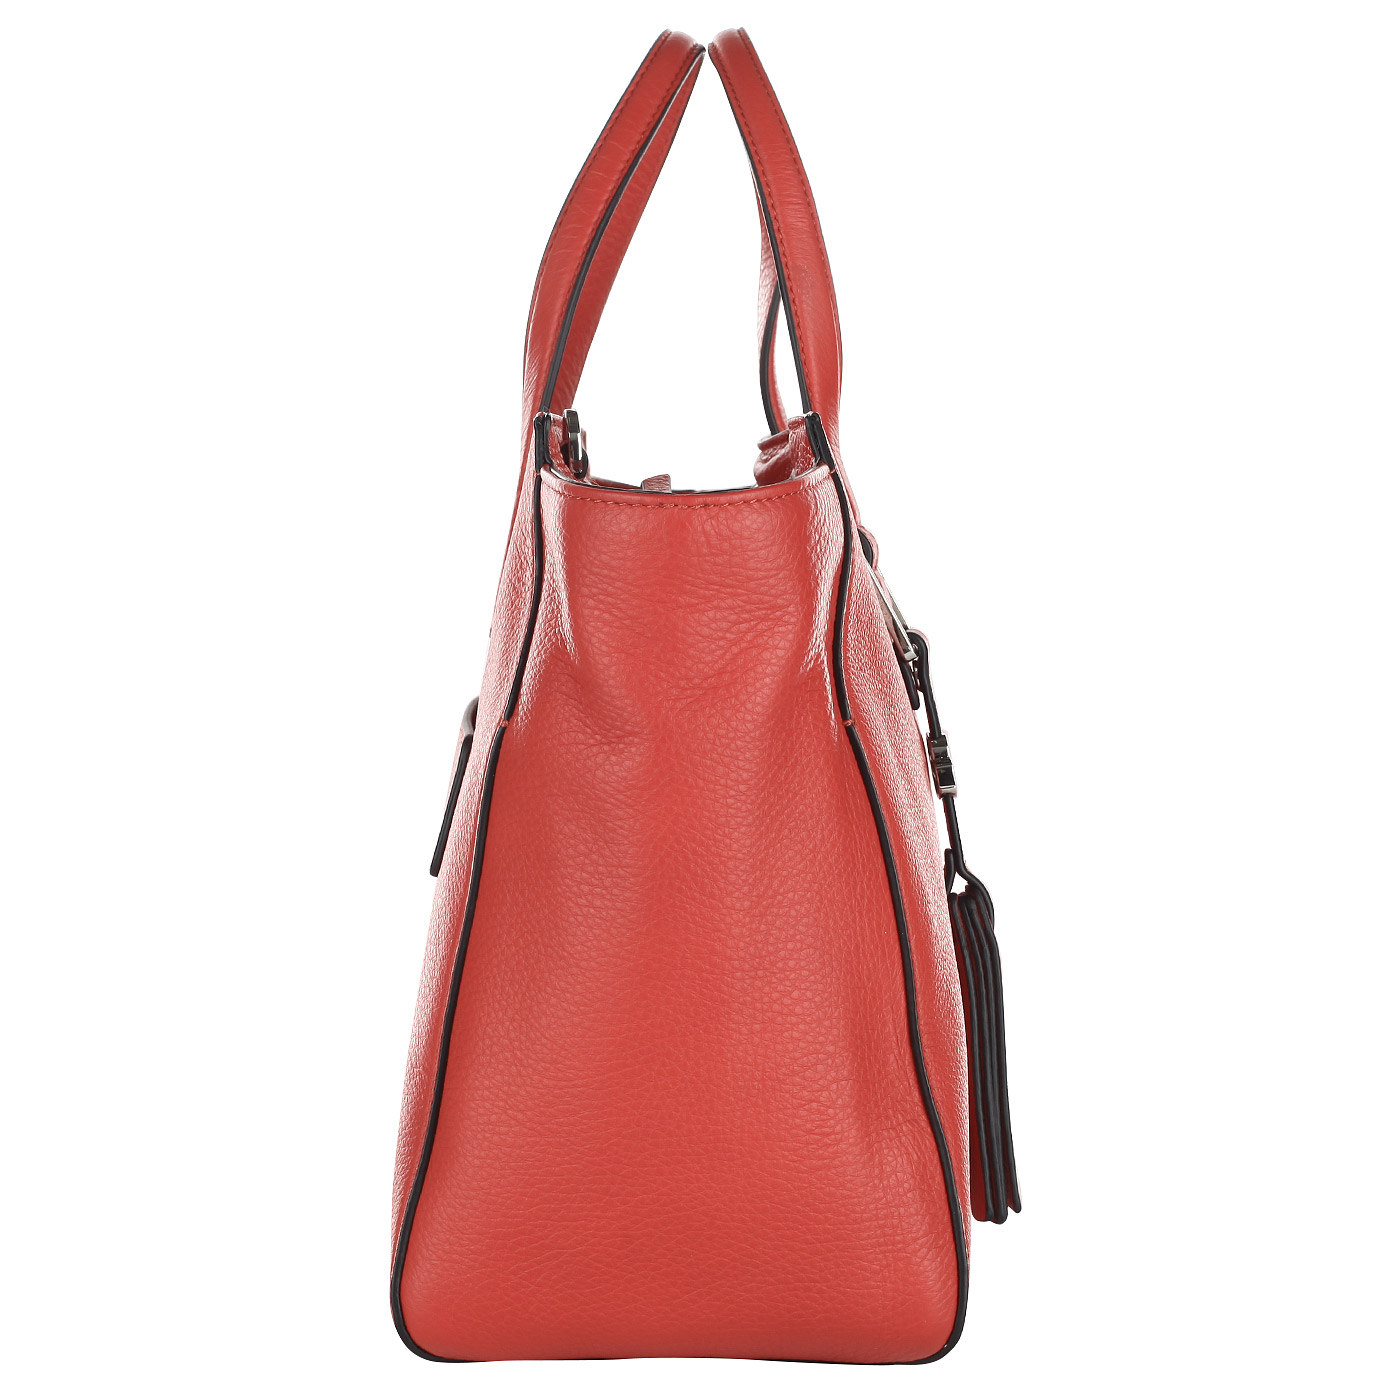 Женская сумка из красной кожи Piquadro Muse